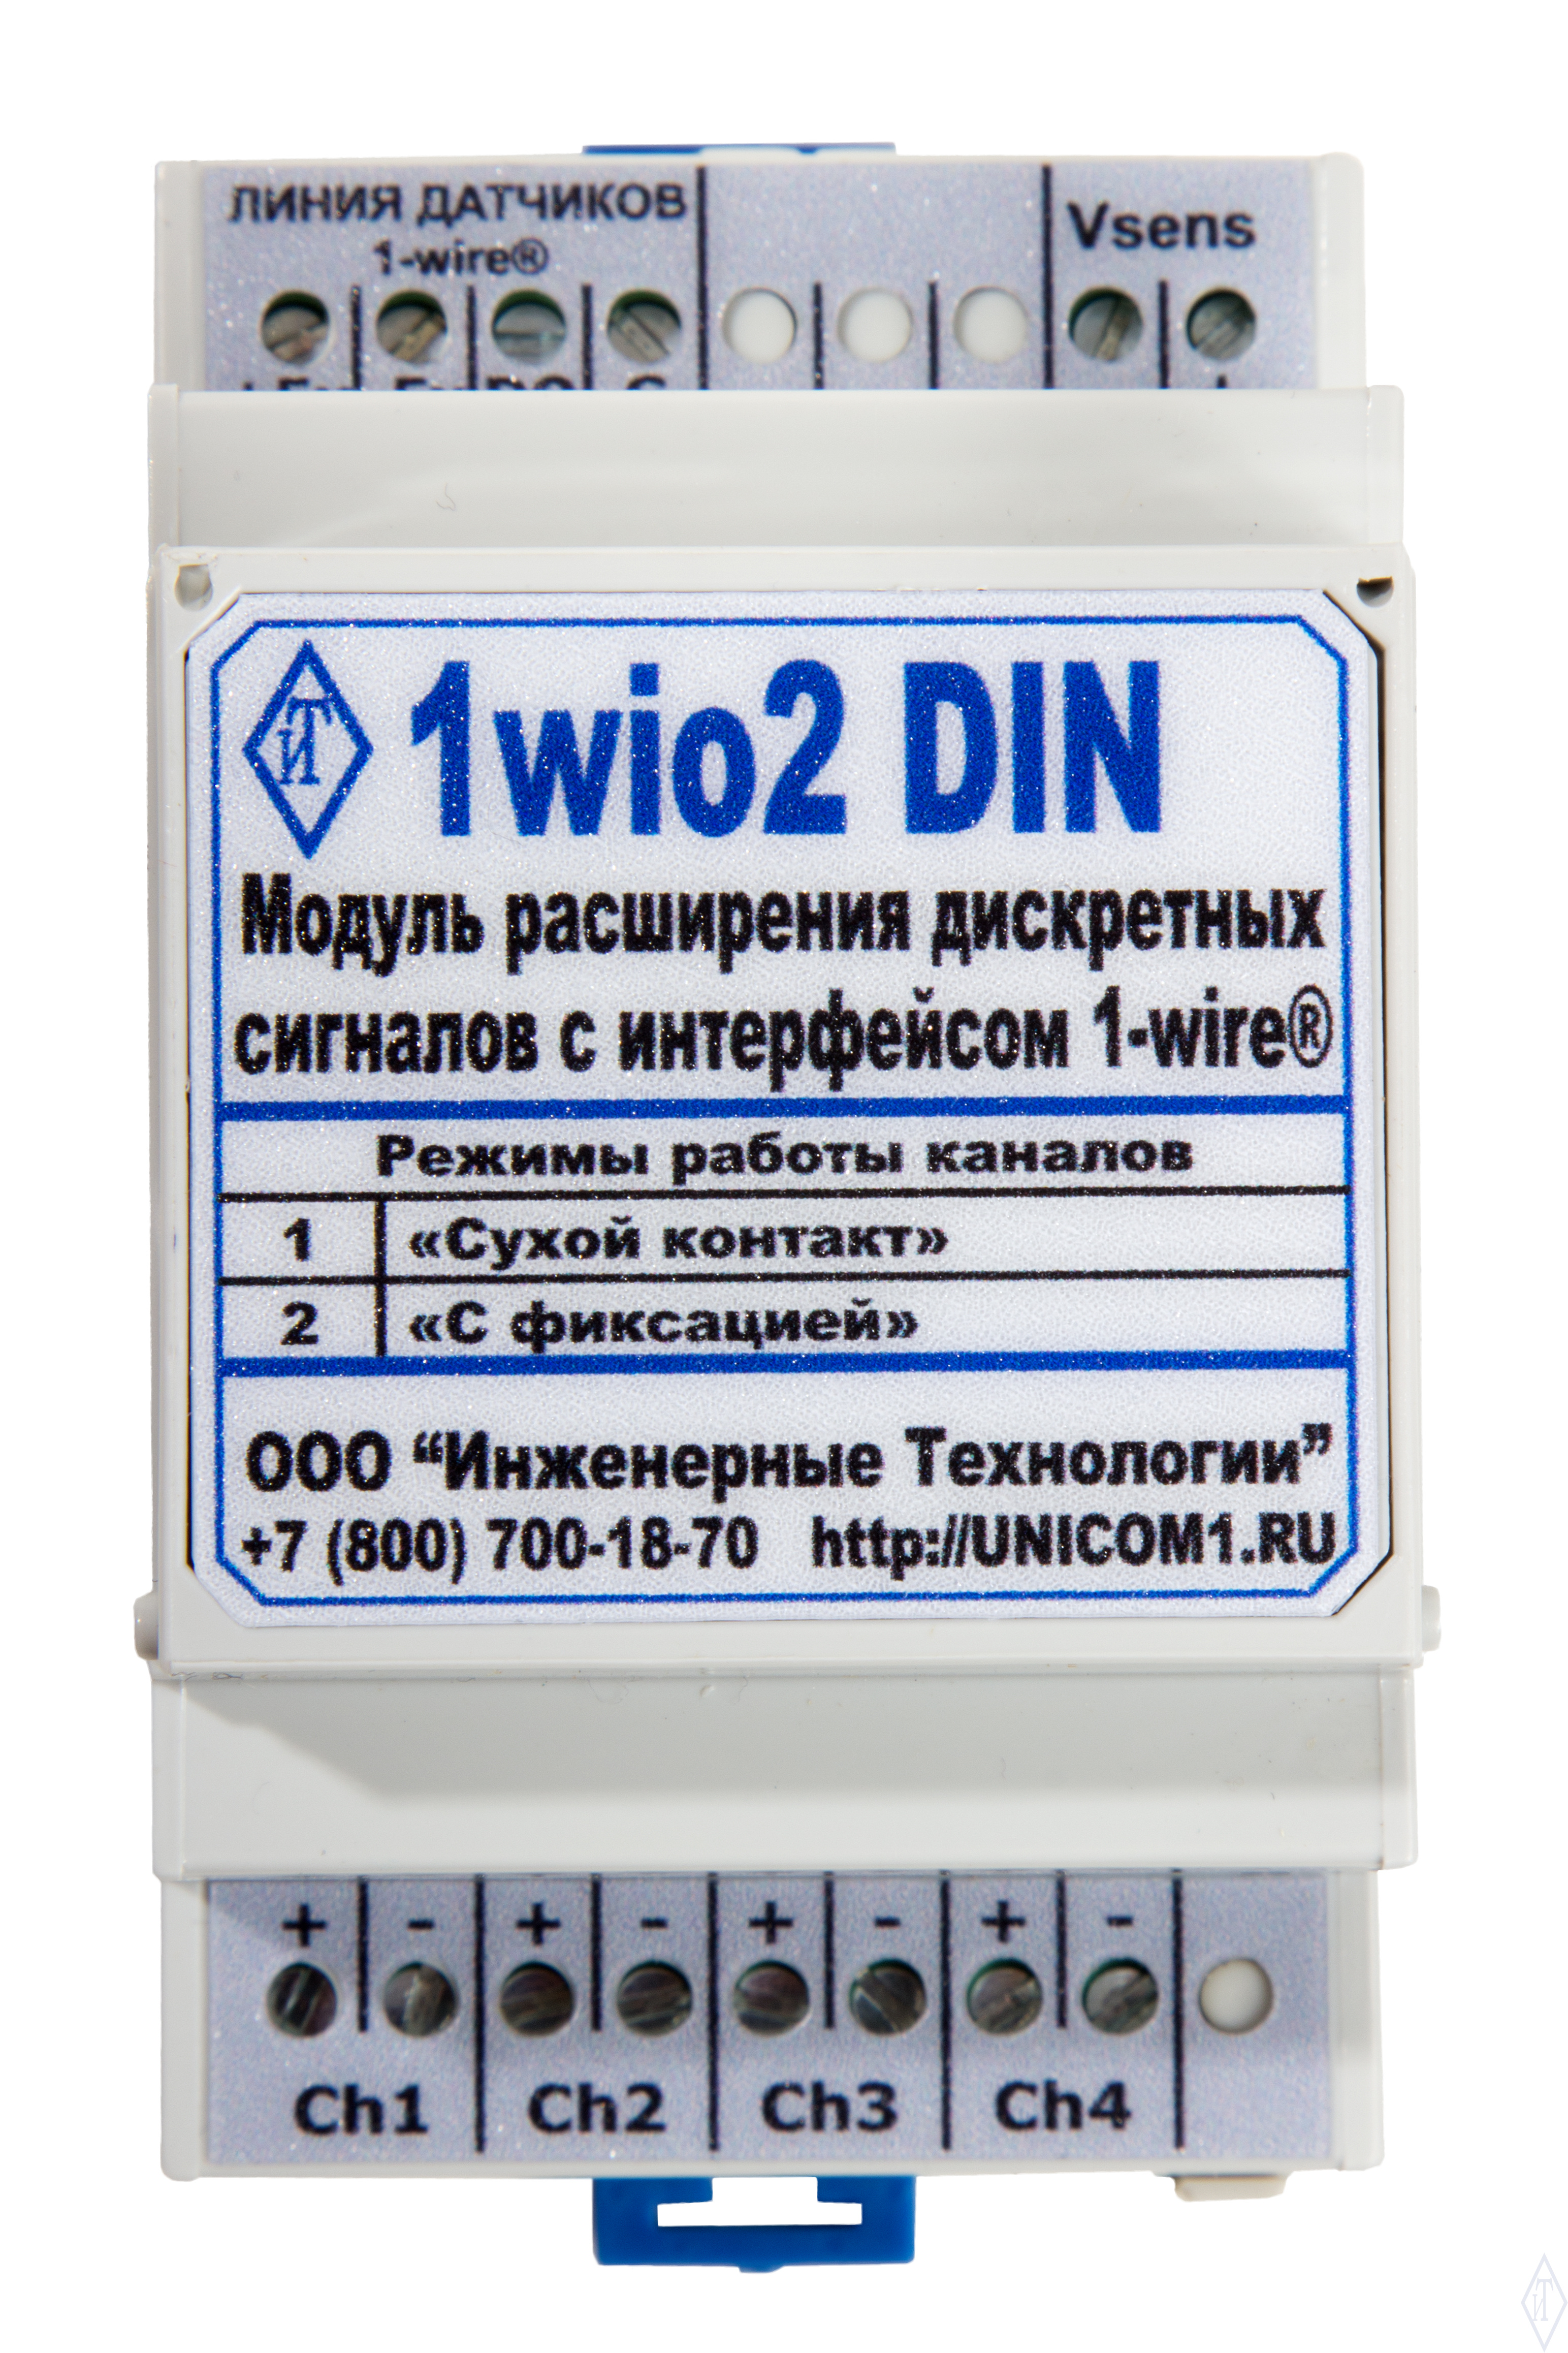 Модуль расширения дискретных сигналов "1wio2 DIN"